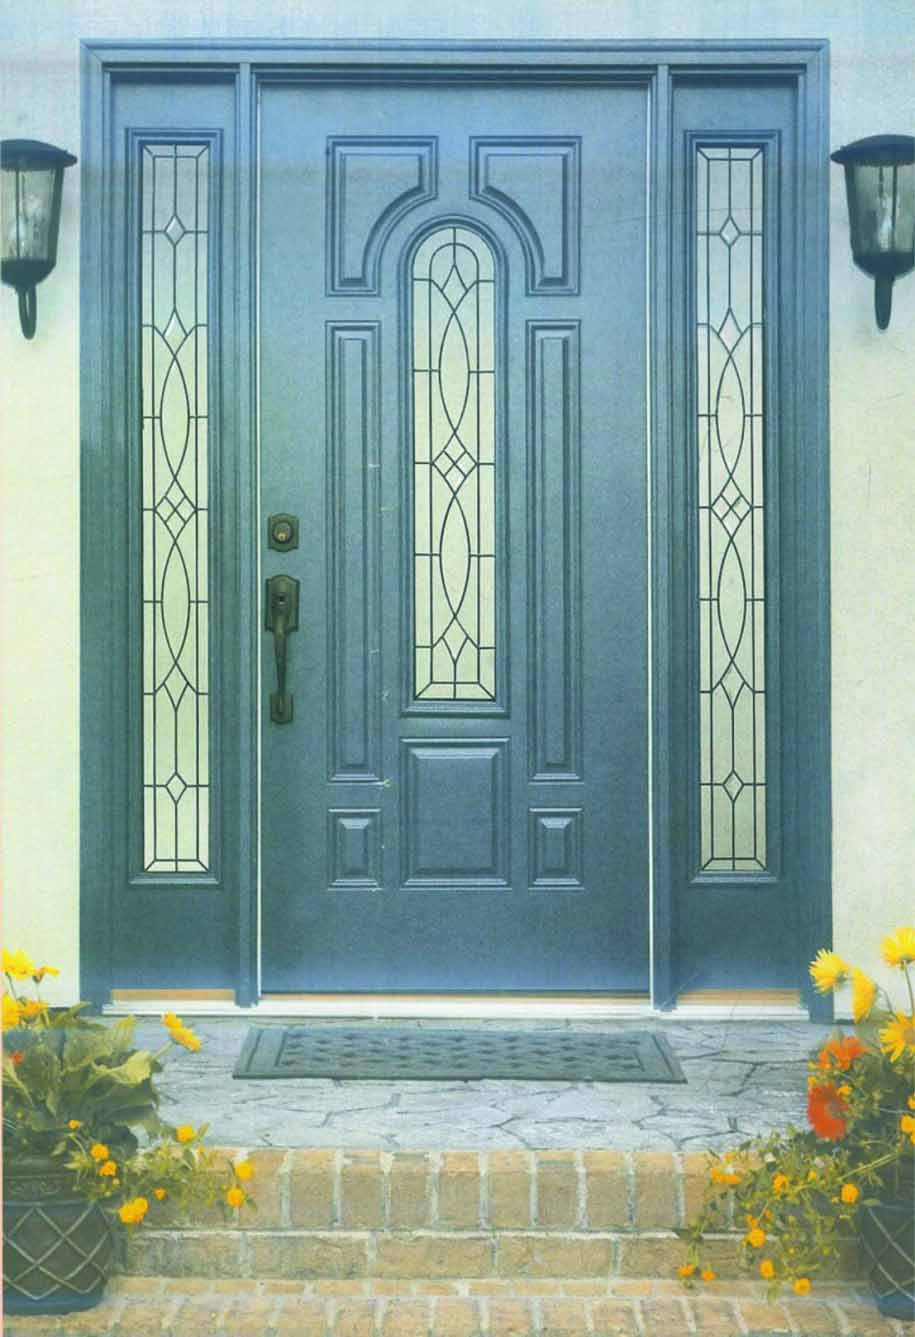  Pintu  Minimalis Dengan Desain Mewah Bergaya Eroupa WAJIB BACA